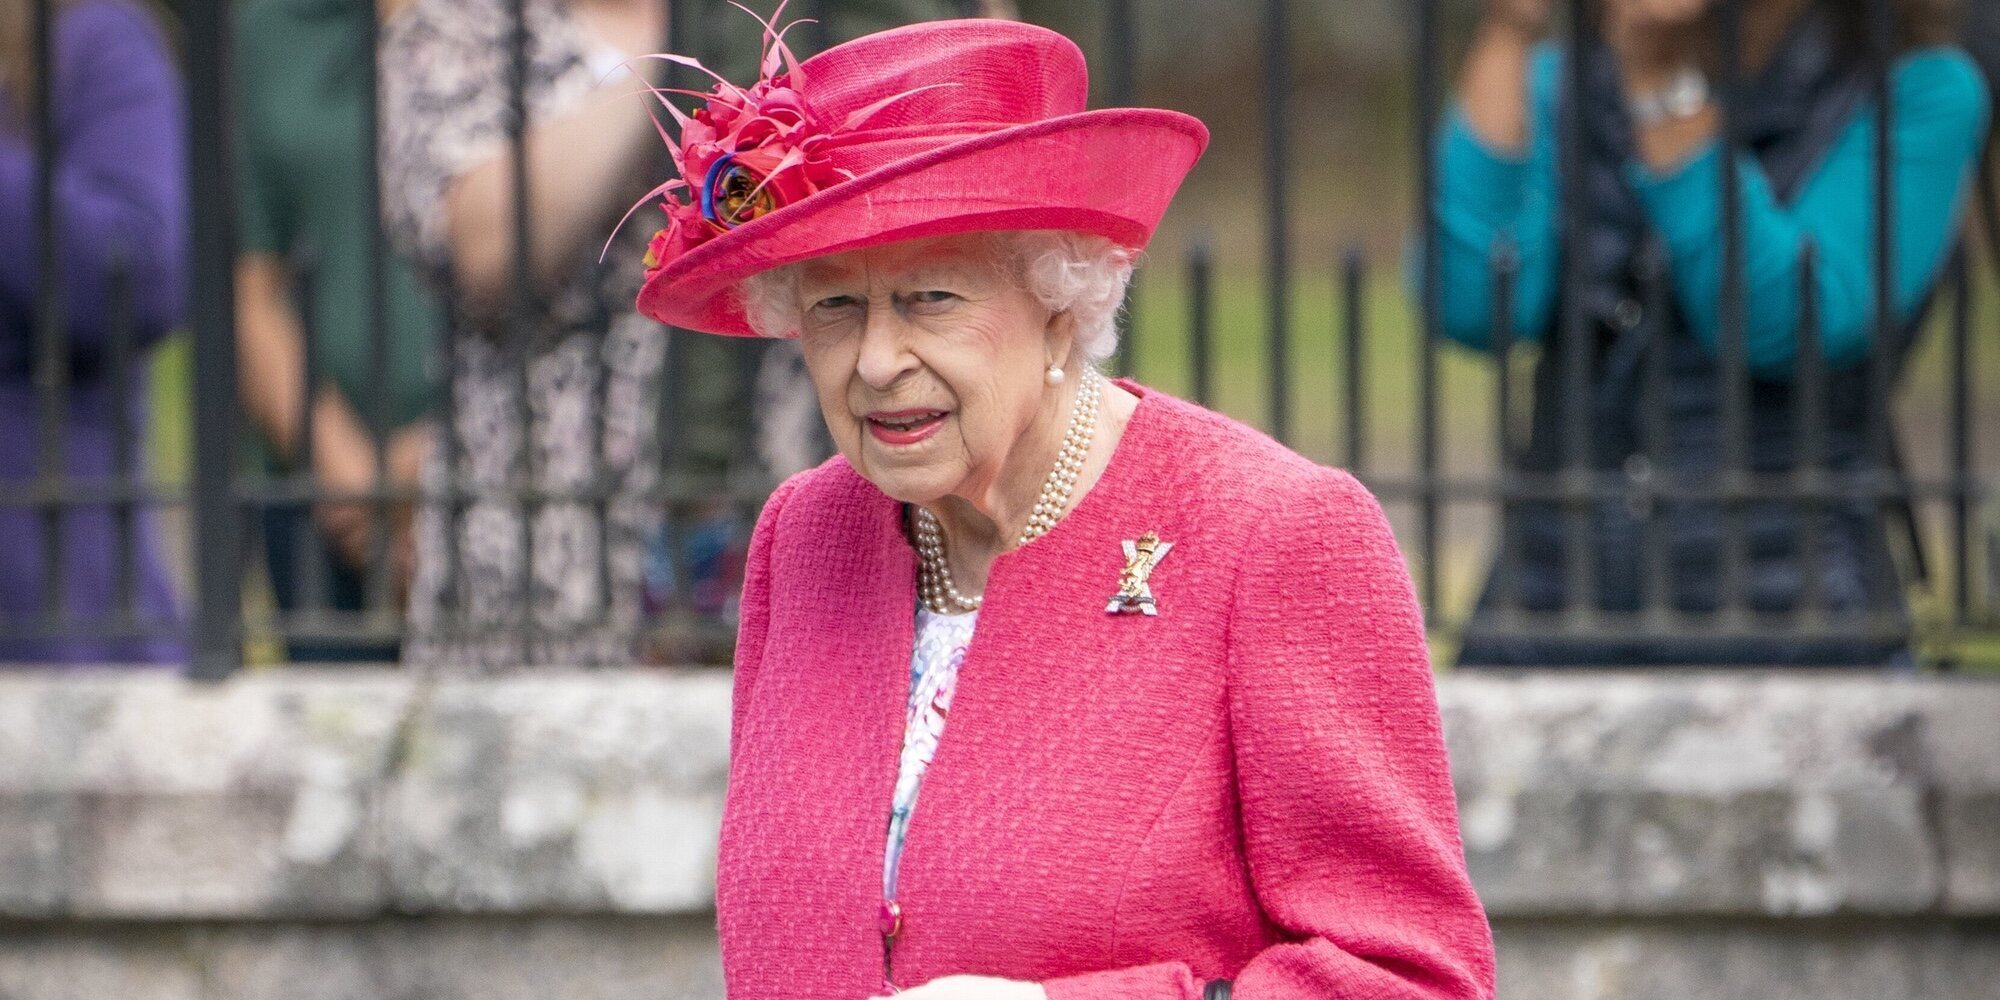 La Reina Isabel II prepara una batalla legal contra el Príncipe Harry y Meghan Markle por sus acusaciones